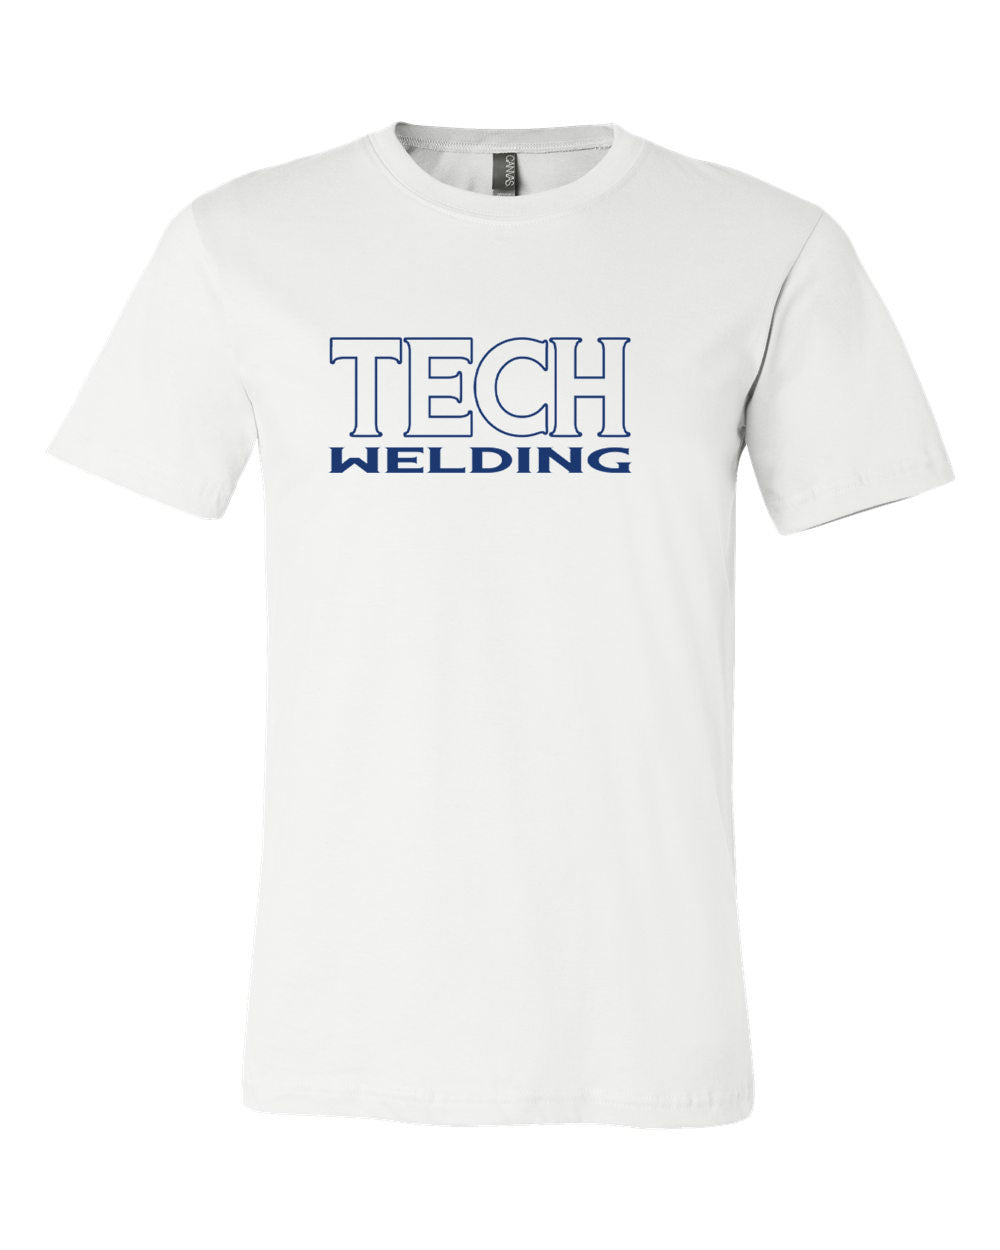 Sussex Tech Welding Design 3 T-Shirt